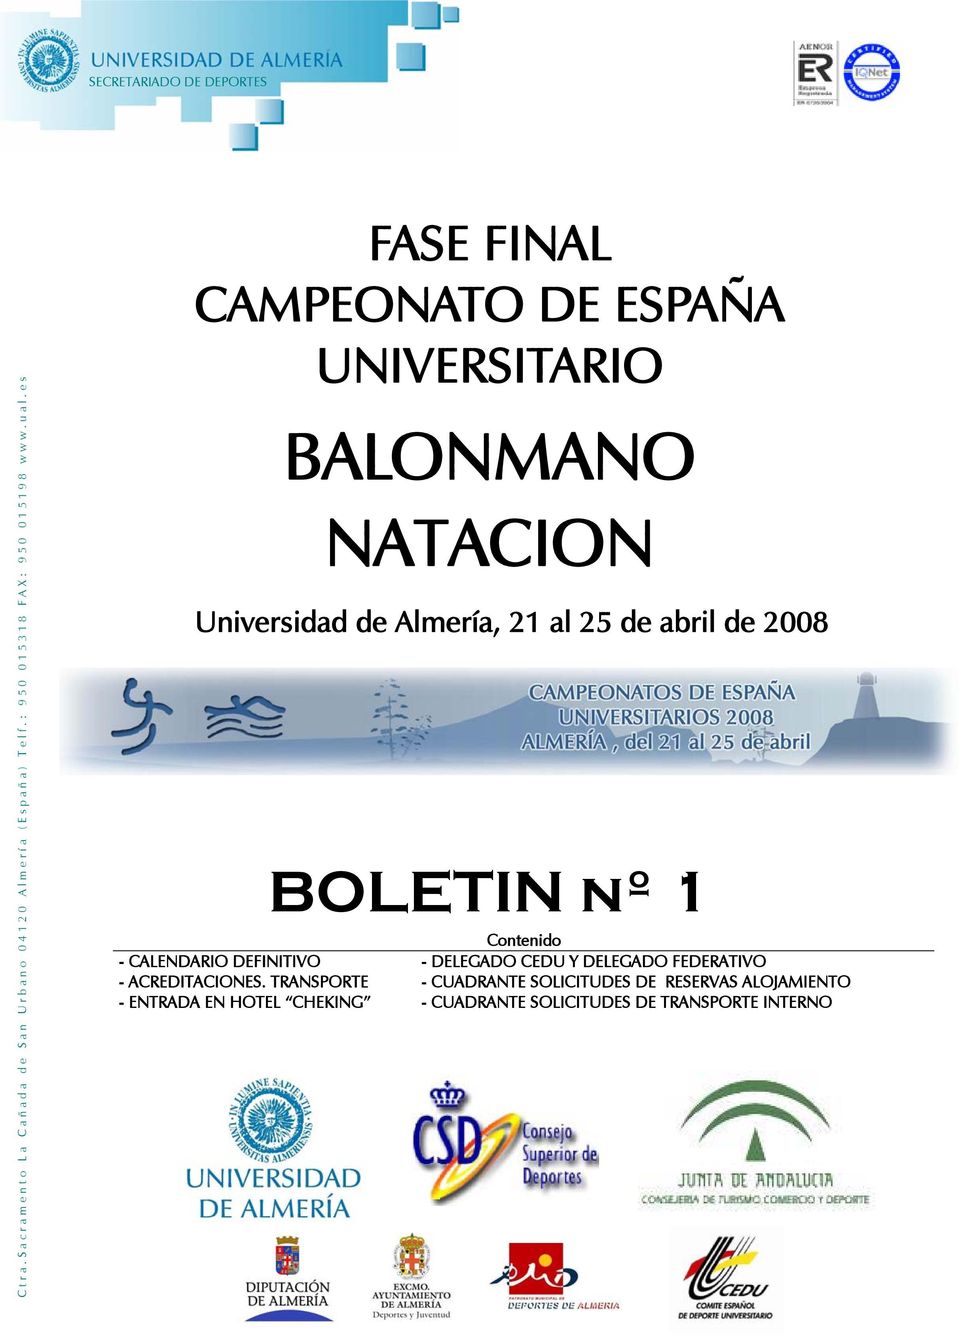 es FASE FINAL CAMPEONATO DE ESPAÑA UNIVERSITARIO BALONMANO NATACION Universidad de Almería, 21 al 25 de abril de 2008 -